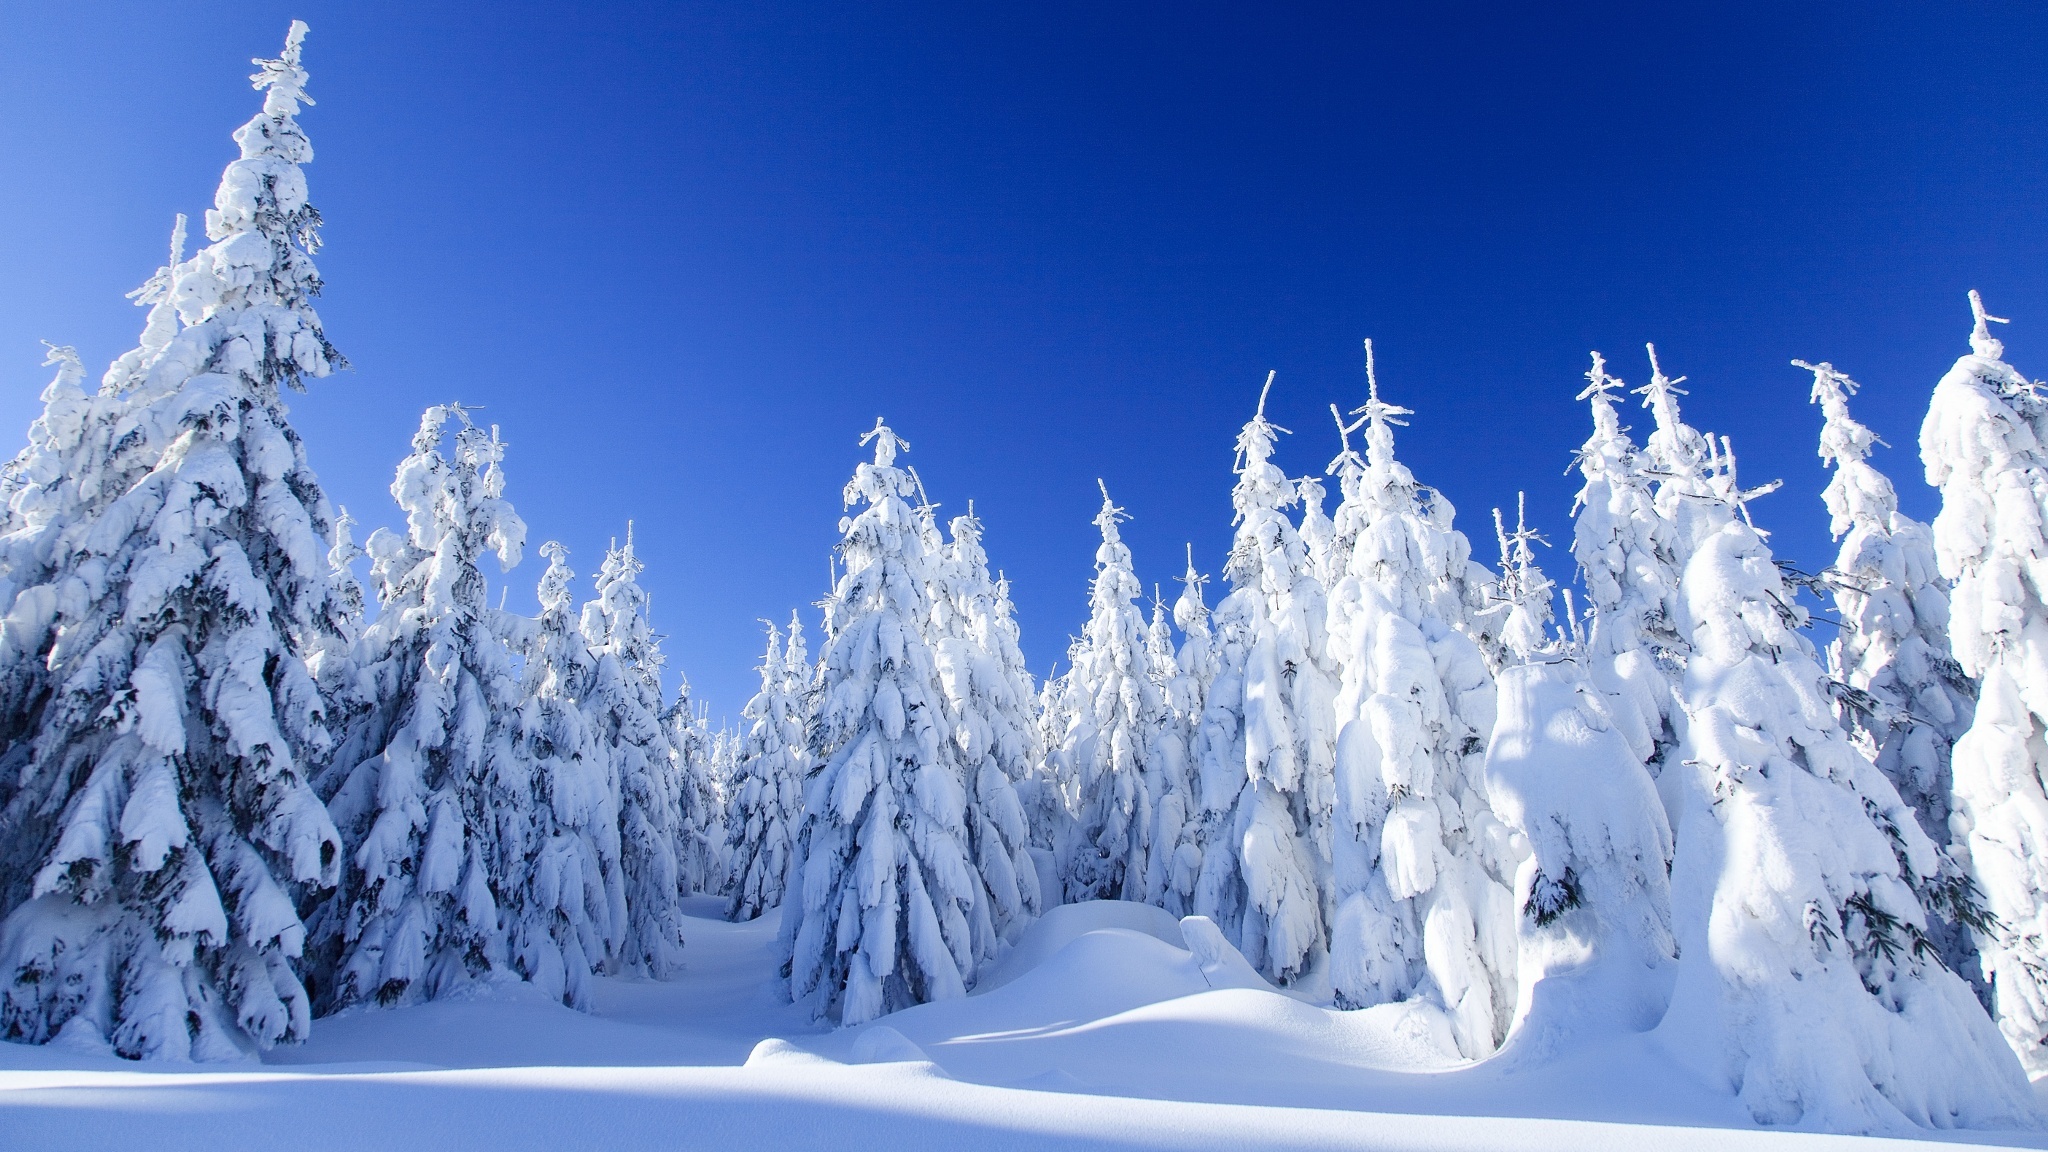 Скачать обои бесплатно Зима, Природа, Снег, Лес, Дерево, Белый, Земля/природа картинка на рабочий стол ПК